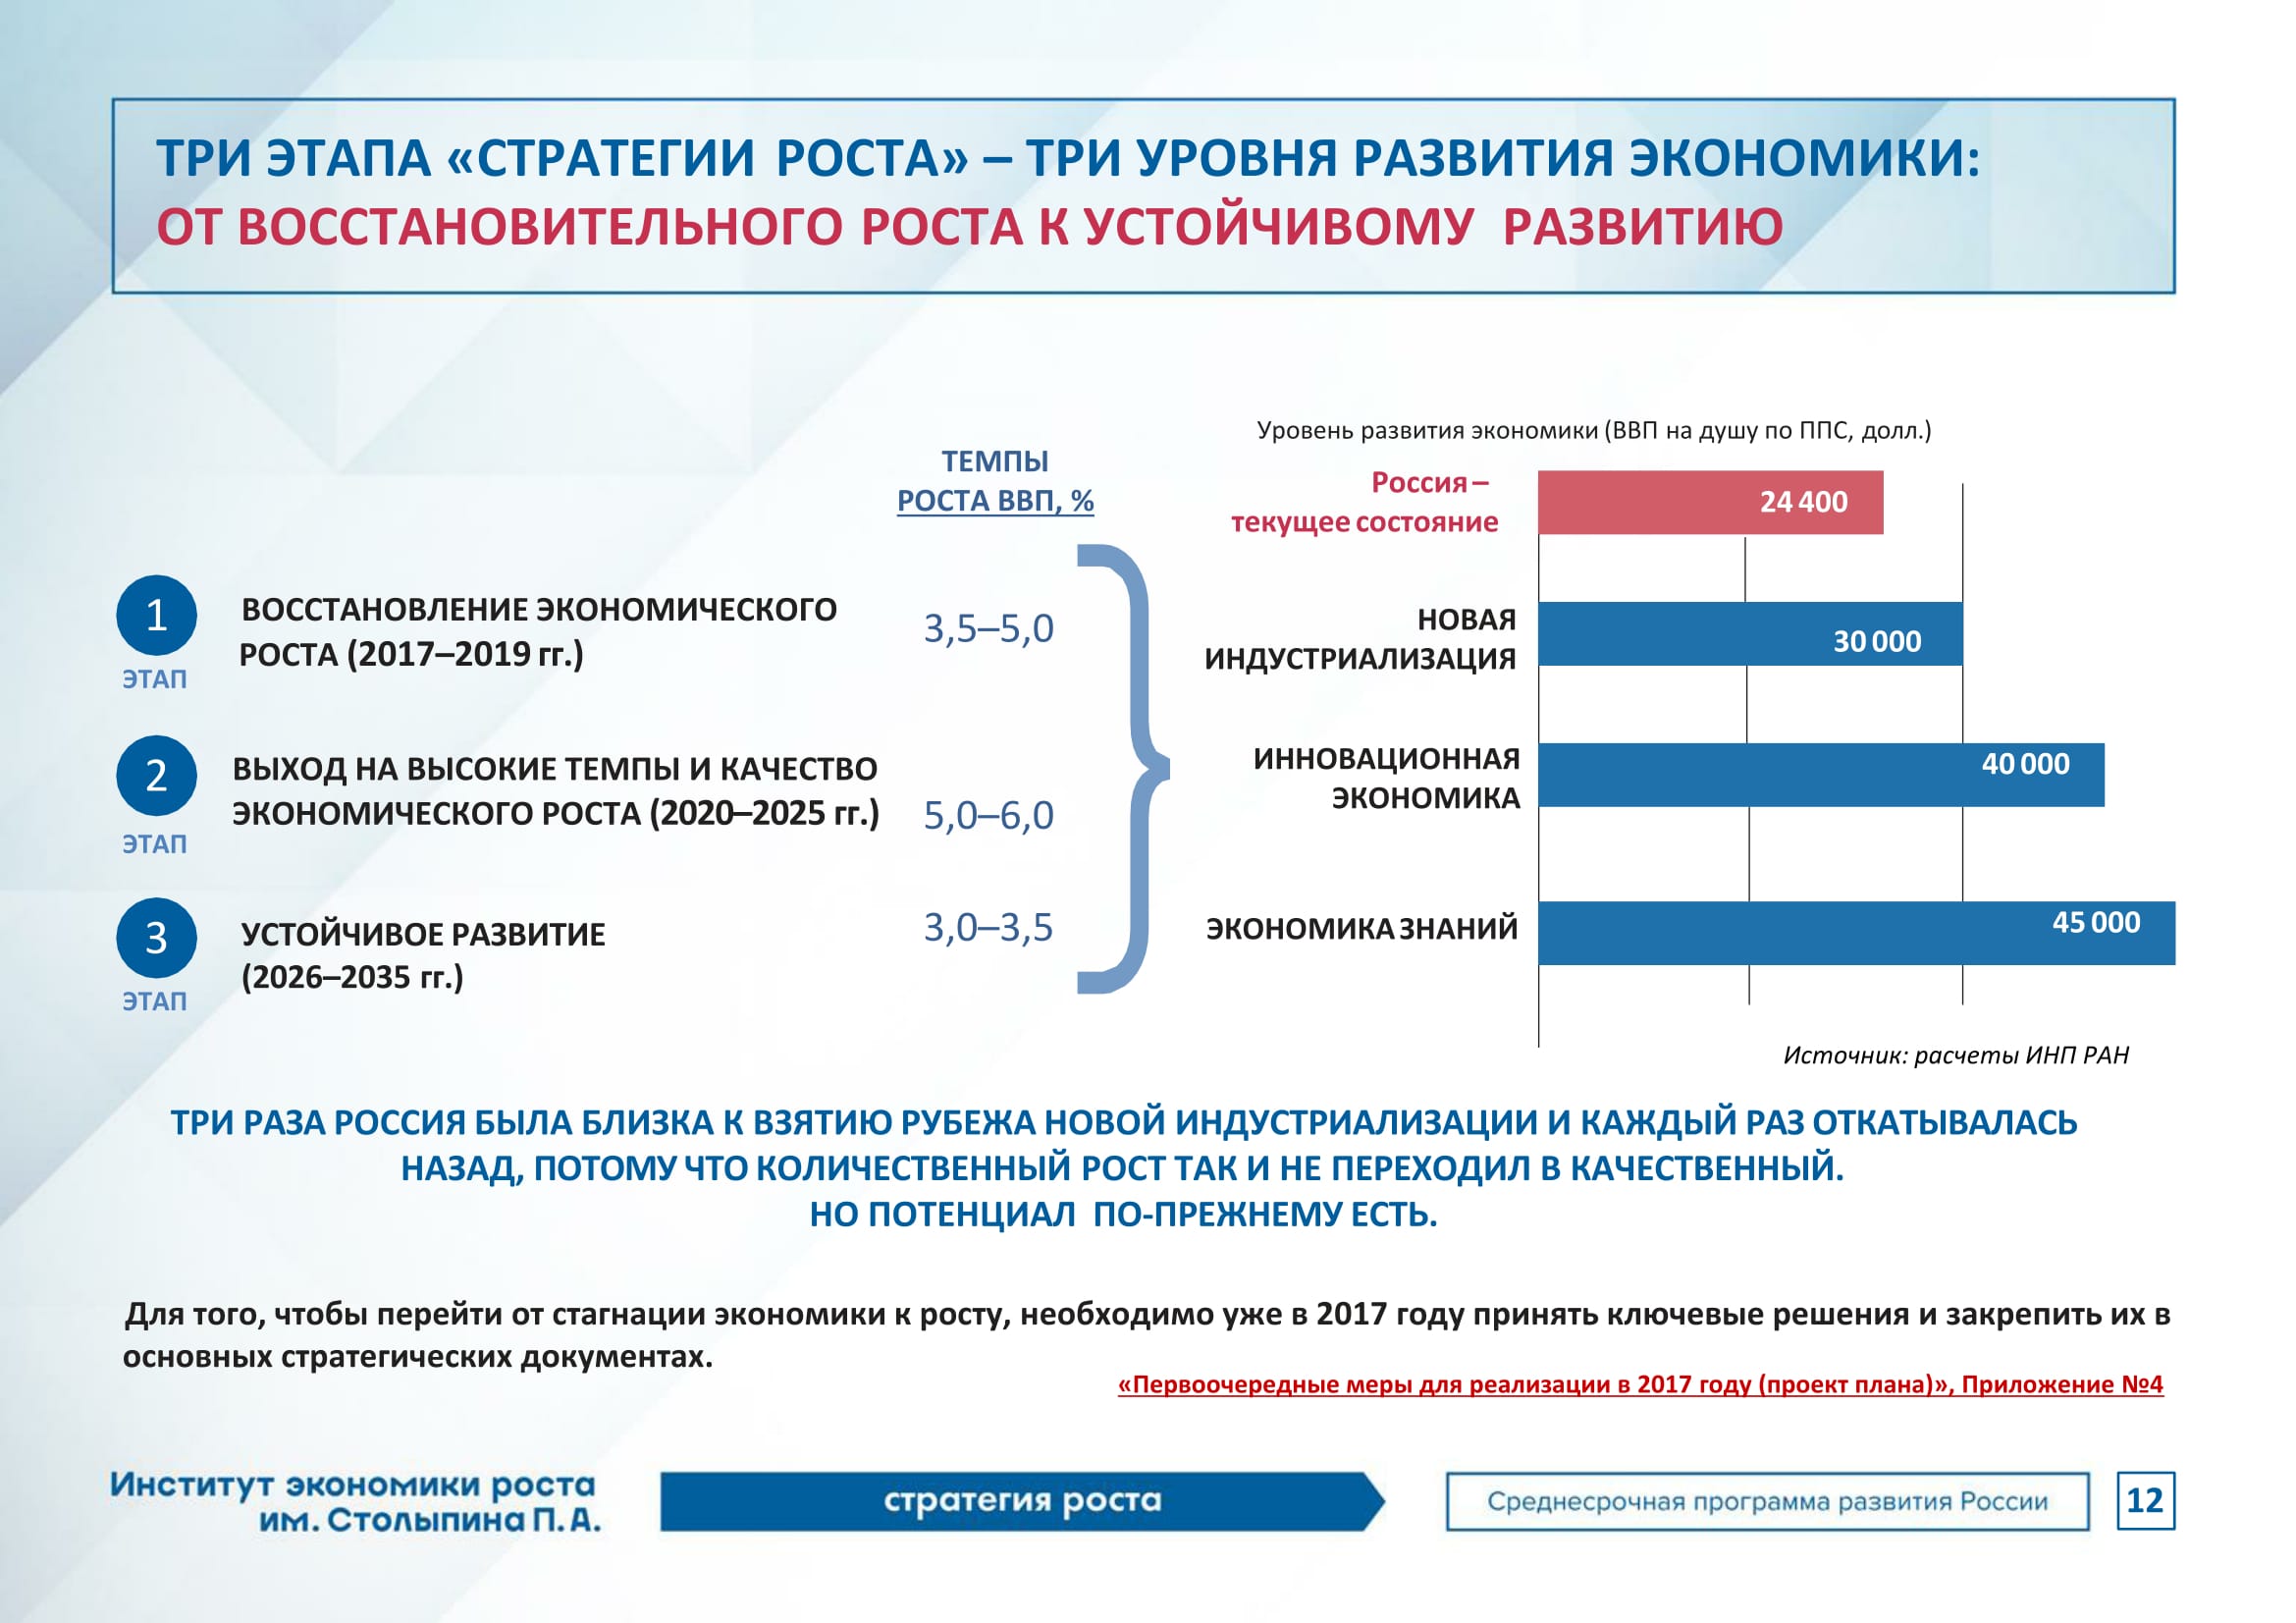 Реализация цифровой экономики в россии. Стратегия развития. Стратегия роста. Программа стратегия роста. Программа экономического развития страны.